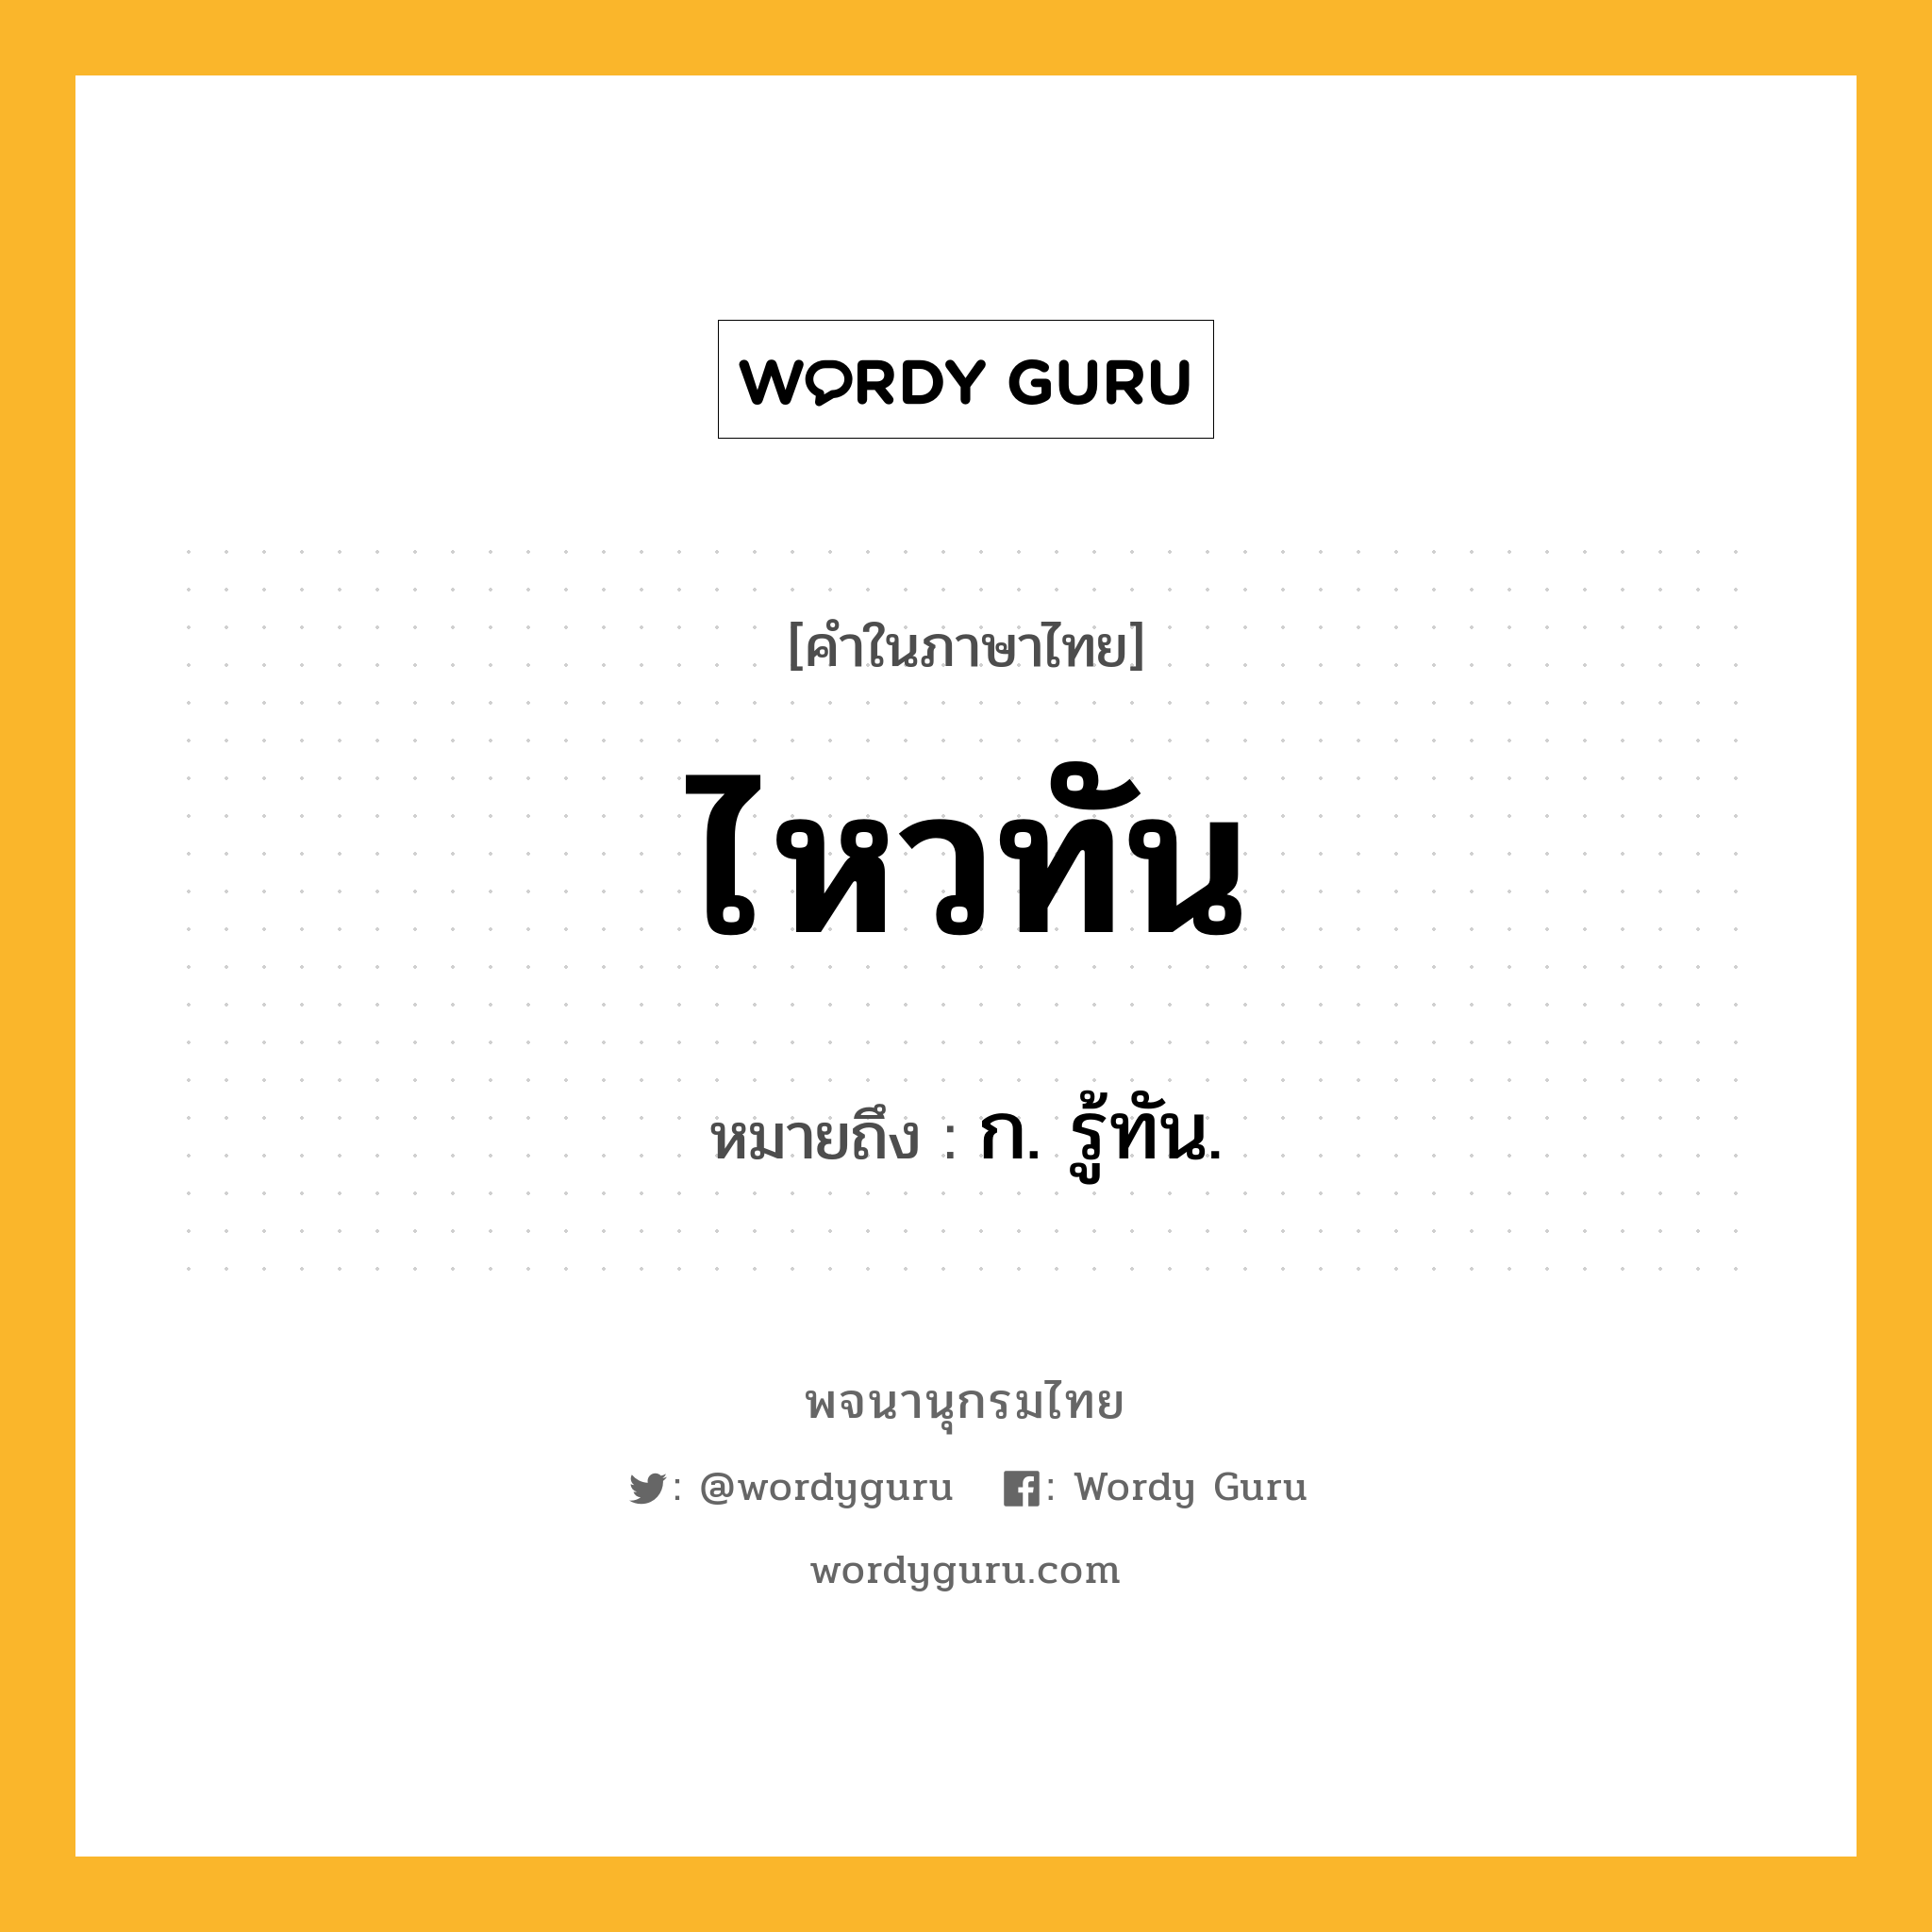 ไหวทัน หมายถึงอะไร?, คำในภาษาไทย ไหวทัน หมายถึง ก. รู้ทัน.